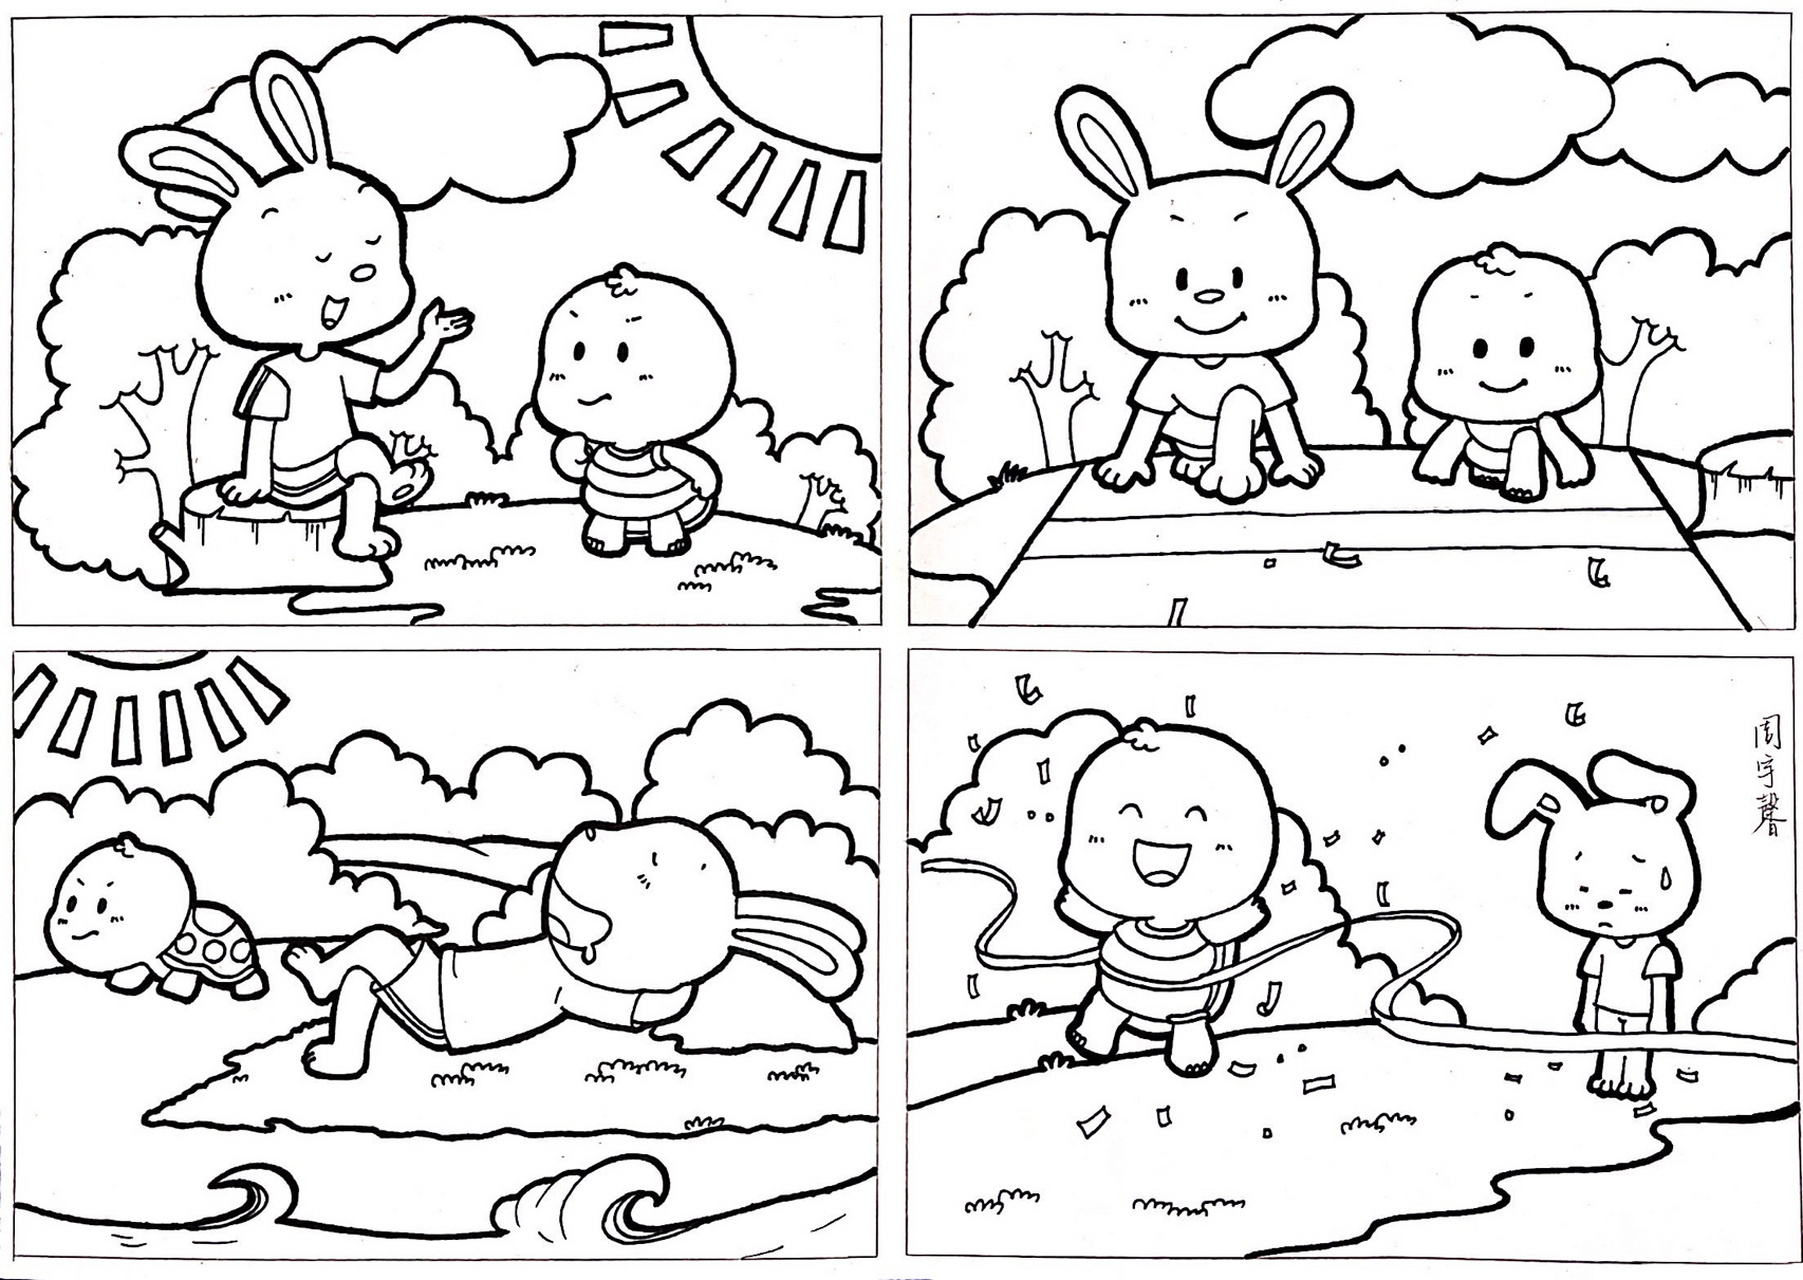 龟兔赛跑漫画故事手绘图片